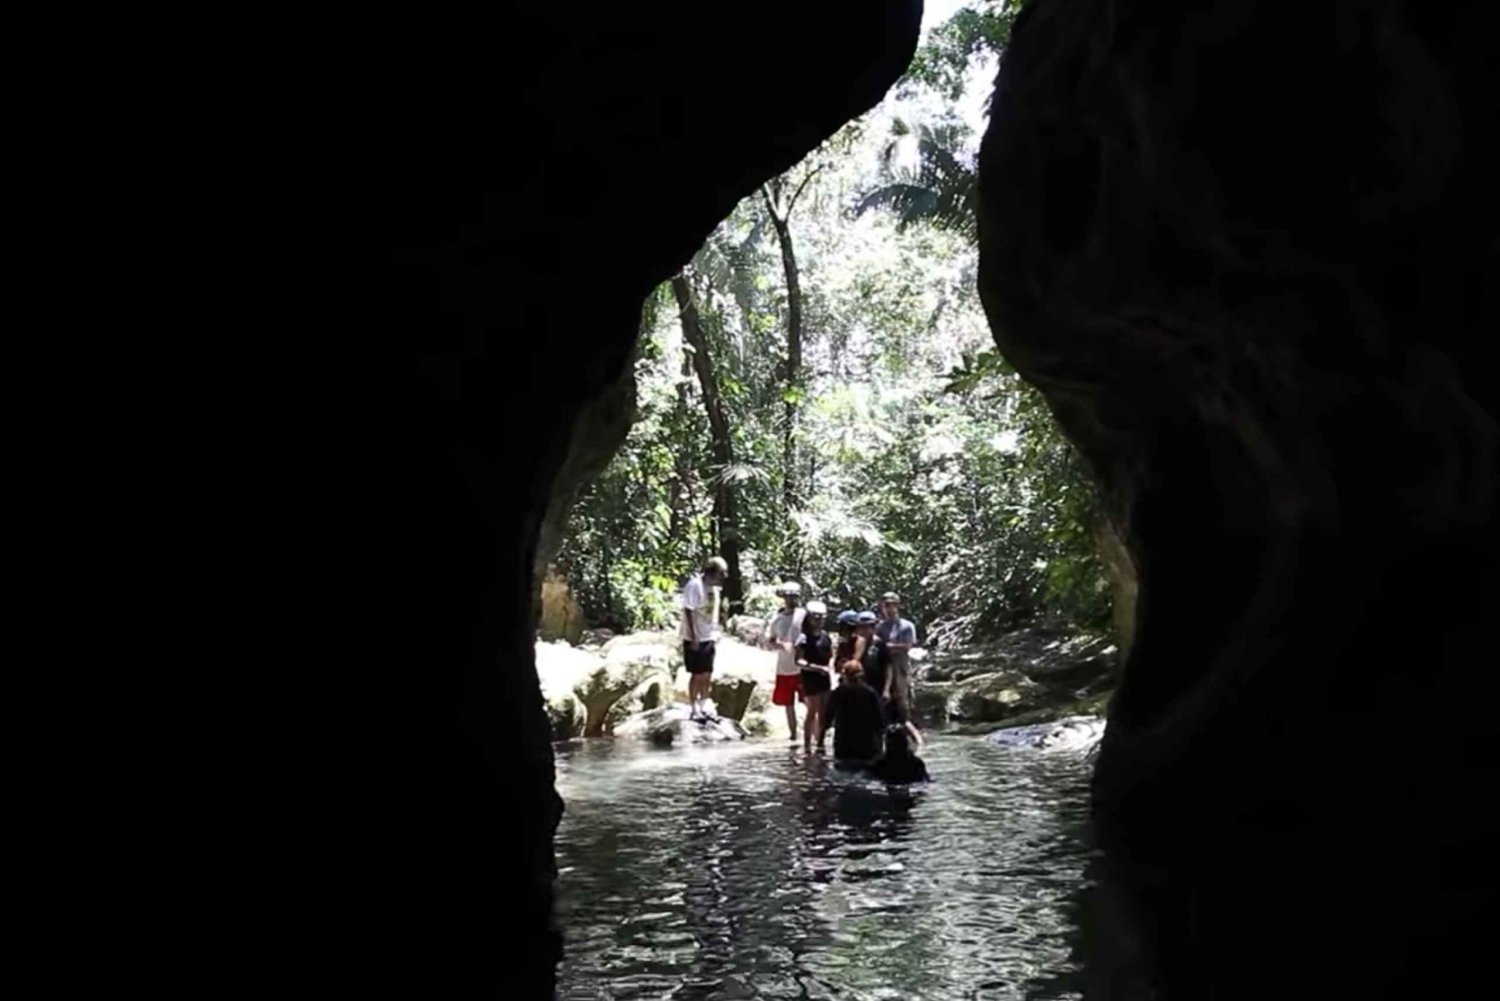 Belice: Excursión de día completo a la cueva Actun Tunichil Muknal (ATM)